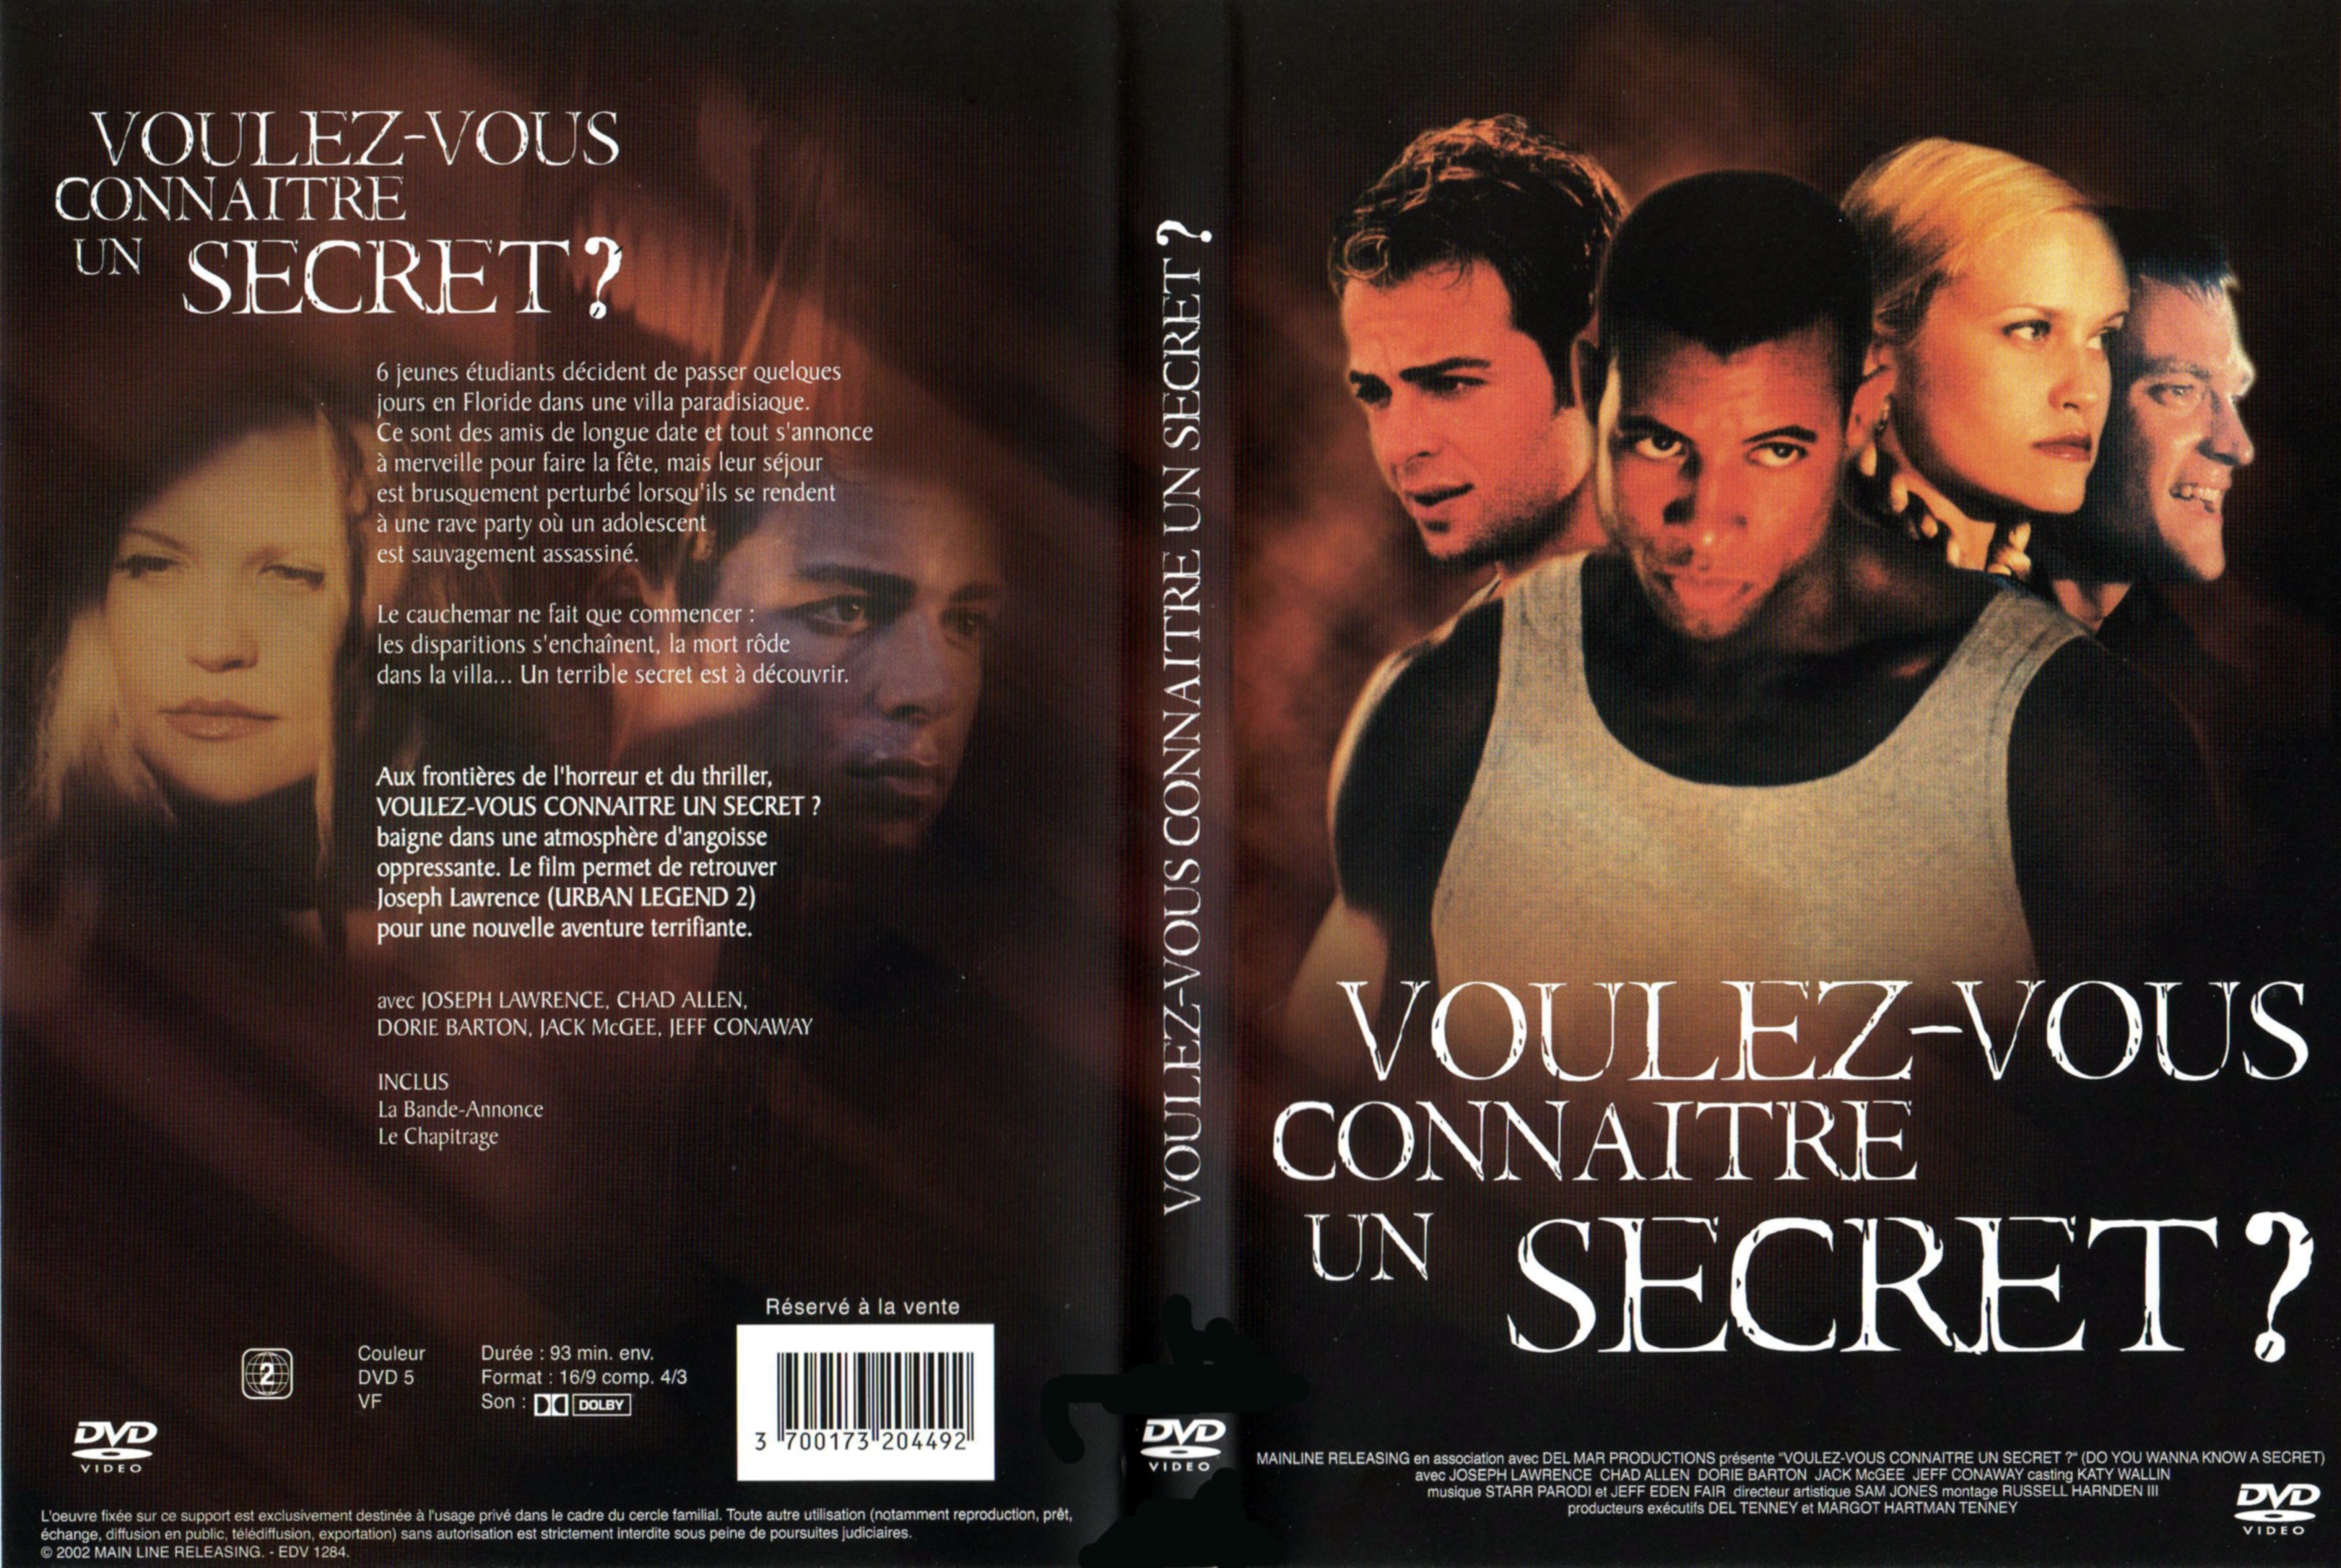 Jaquette DVD Voulez vous connaitre un secret